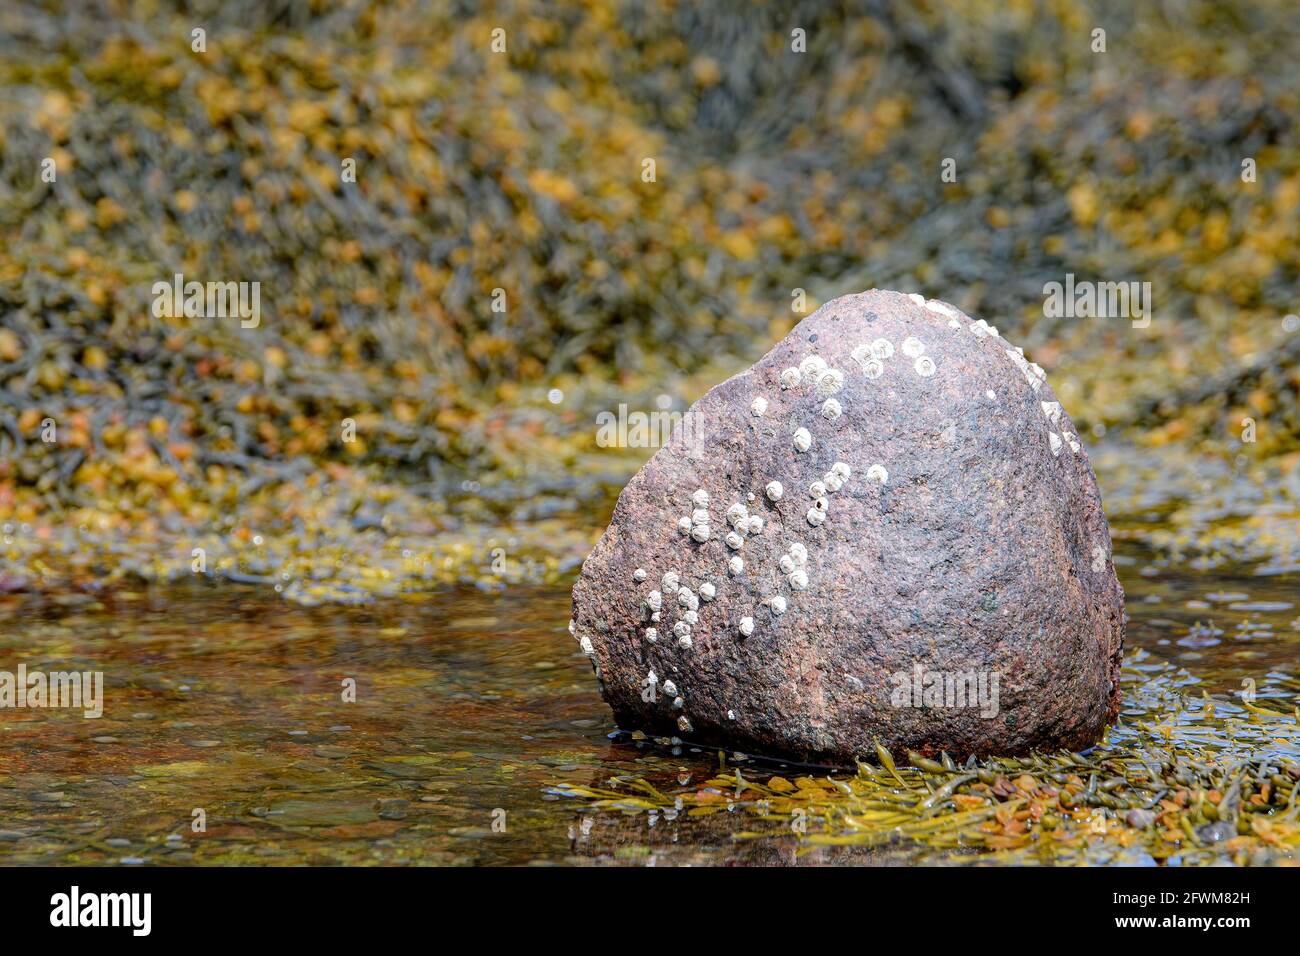 Un rocher avec quelques barnacles repose dans un bassin marécageux peu profond. Algues dans la piscine et derrière. Faible profondeur de champ. Banque D'Images